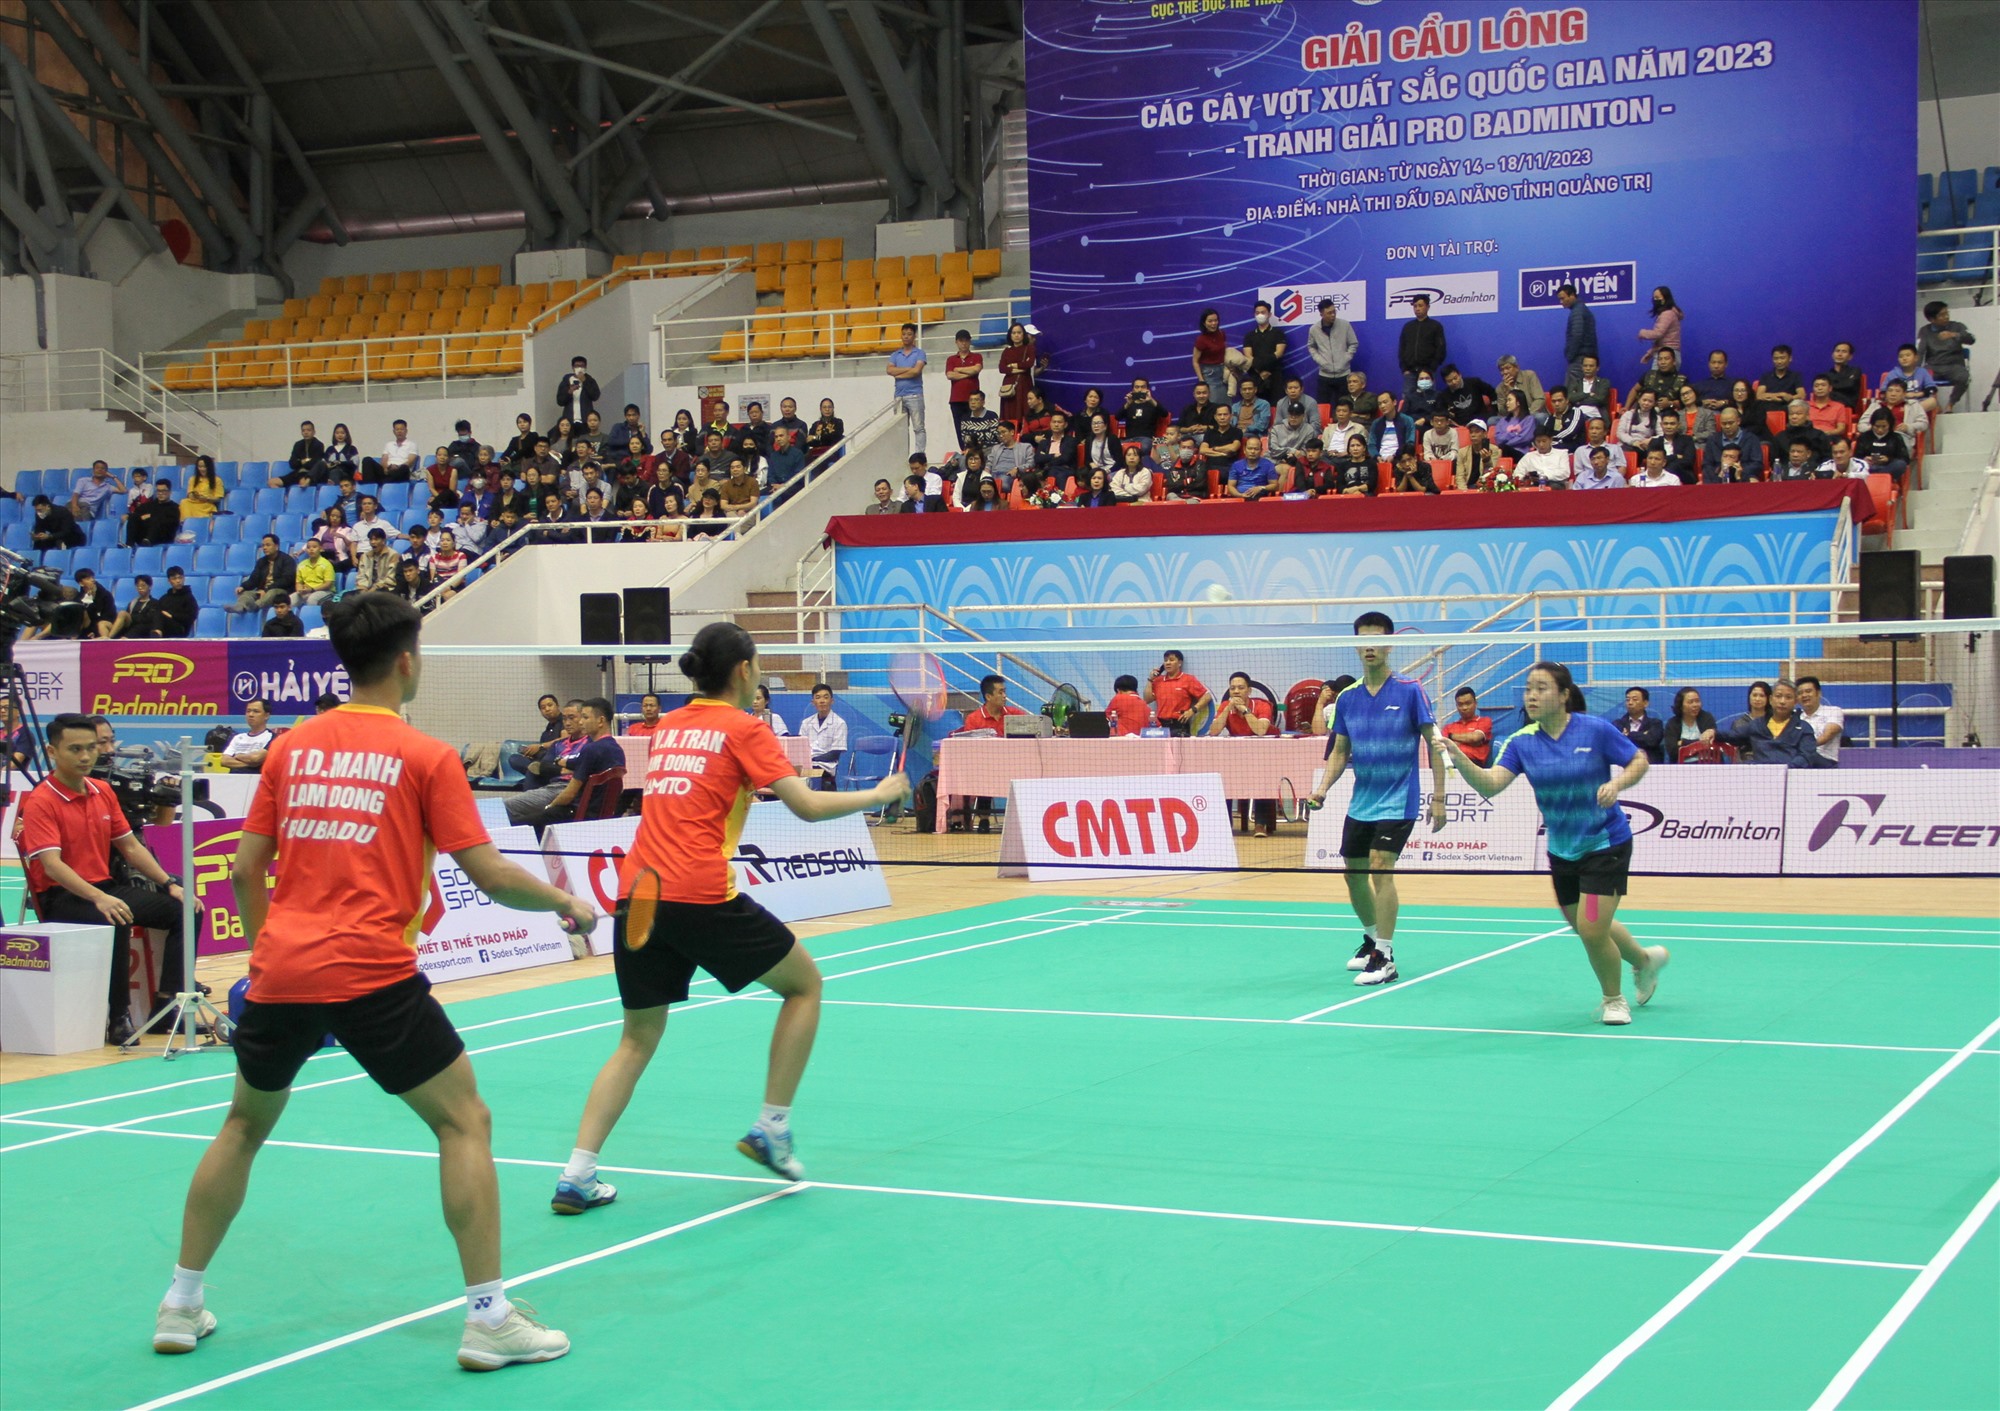 Giải Cầu lông các cây vợt xuất sắc quốc gia năm 2023 quy tụ những ngôi sao cầu lông hàng đầu Việt Nam - Ảnh: M.Đ